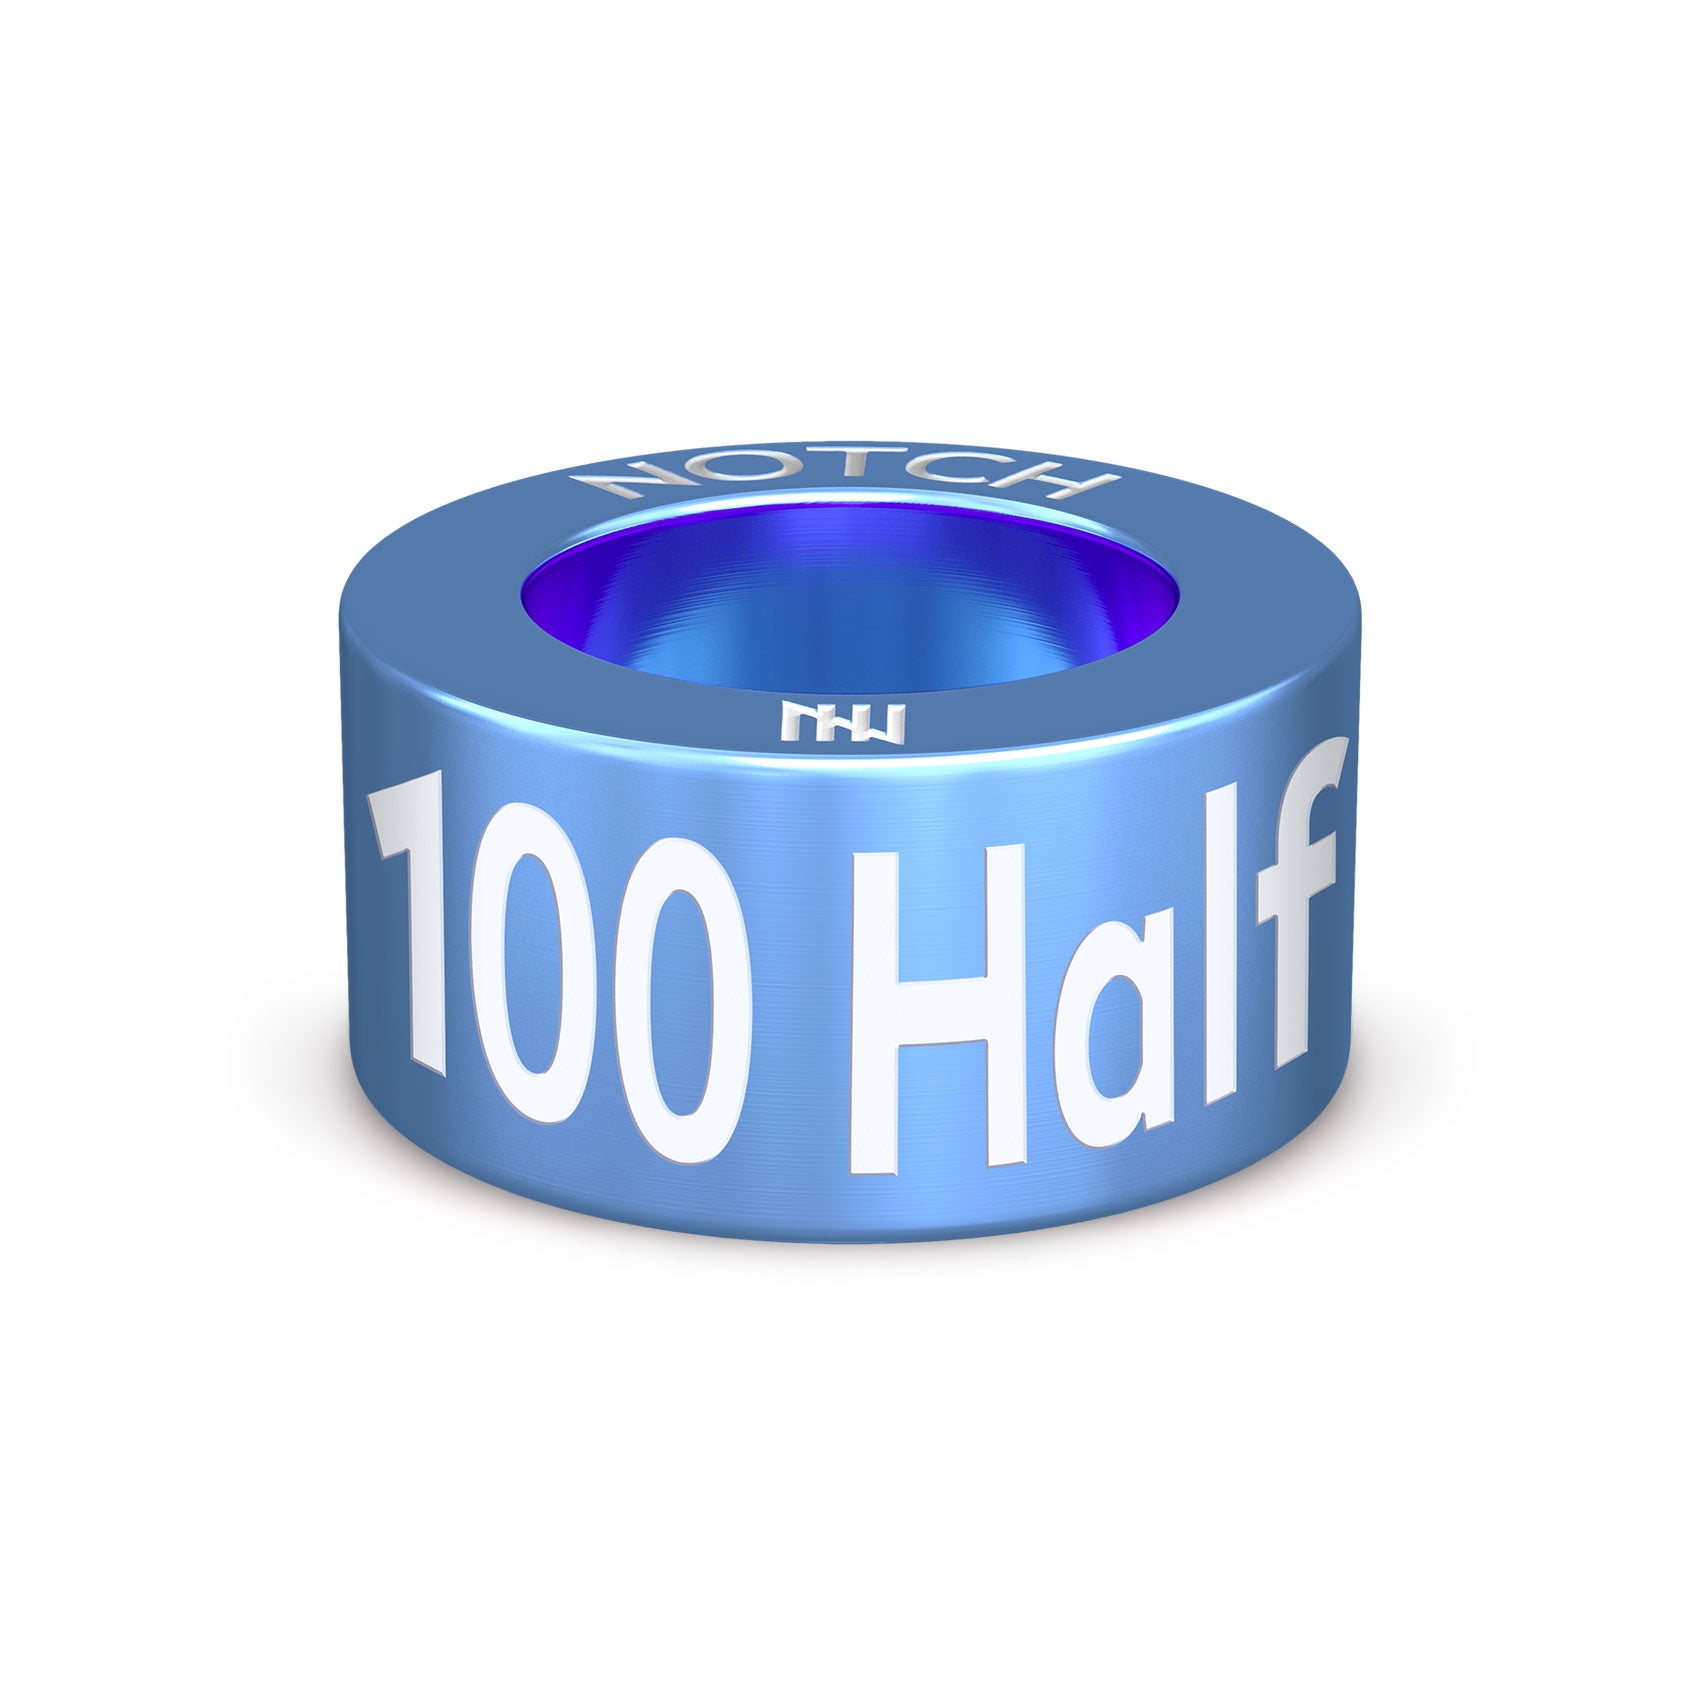 100 Half Marathon Club NOTCH Charm